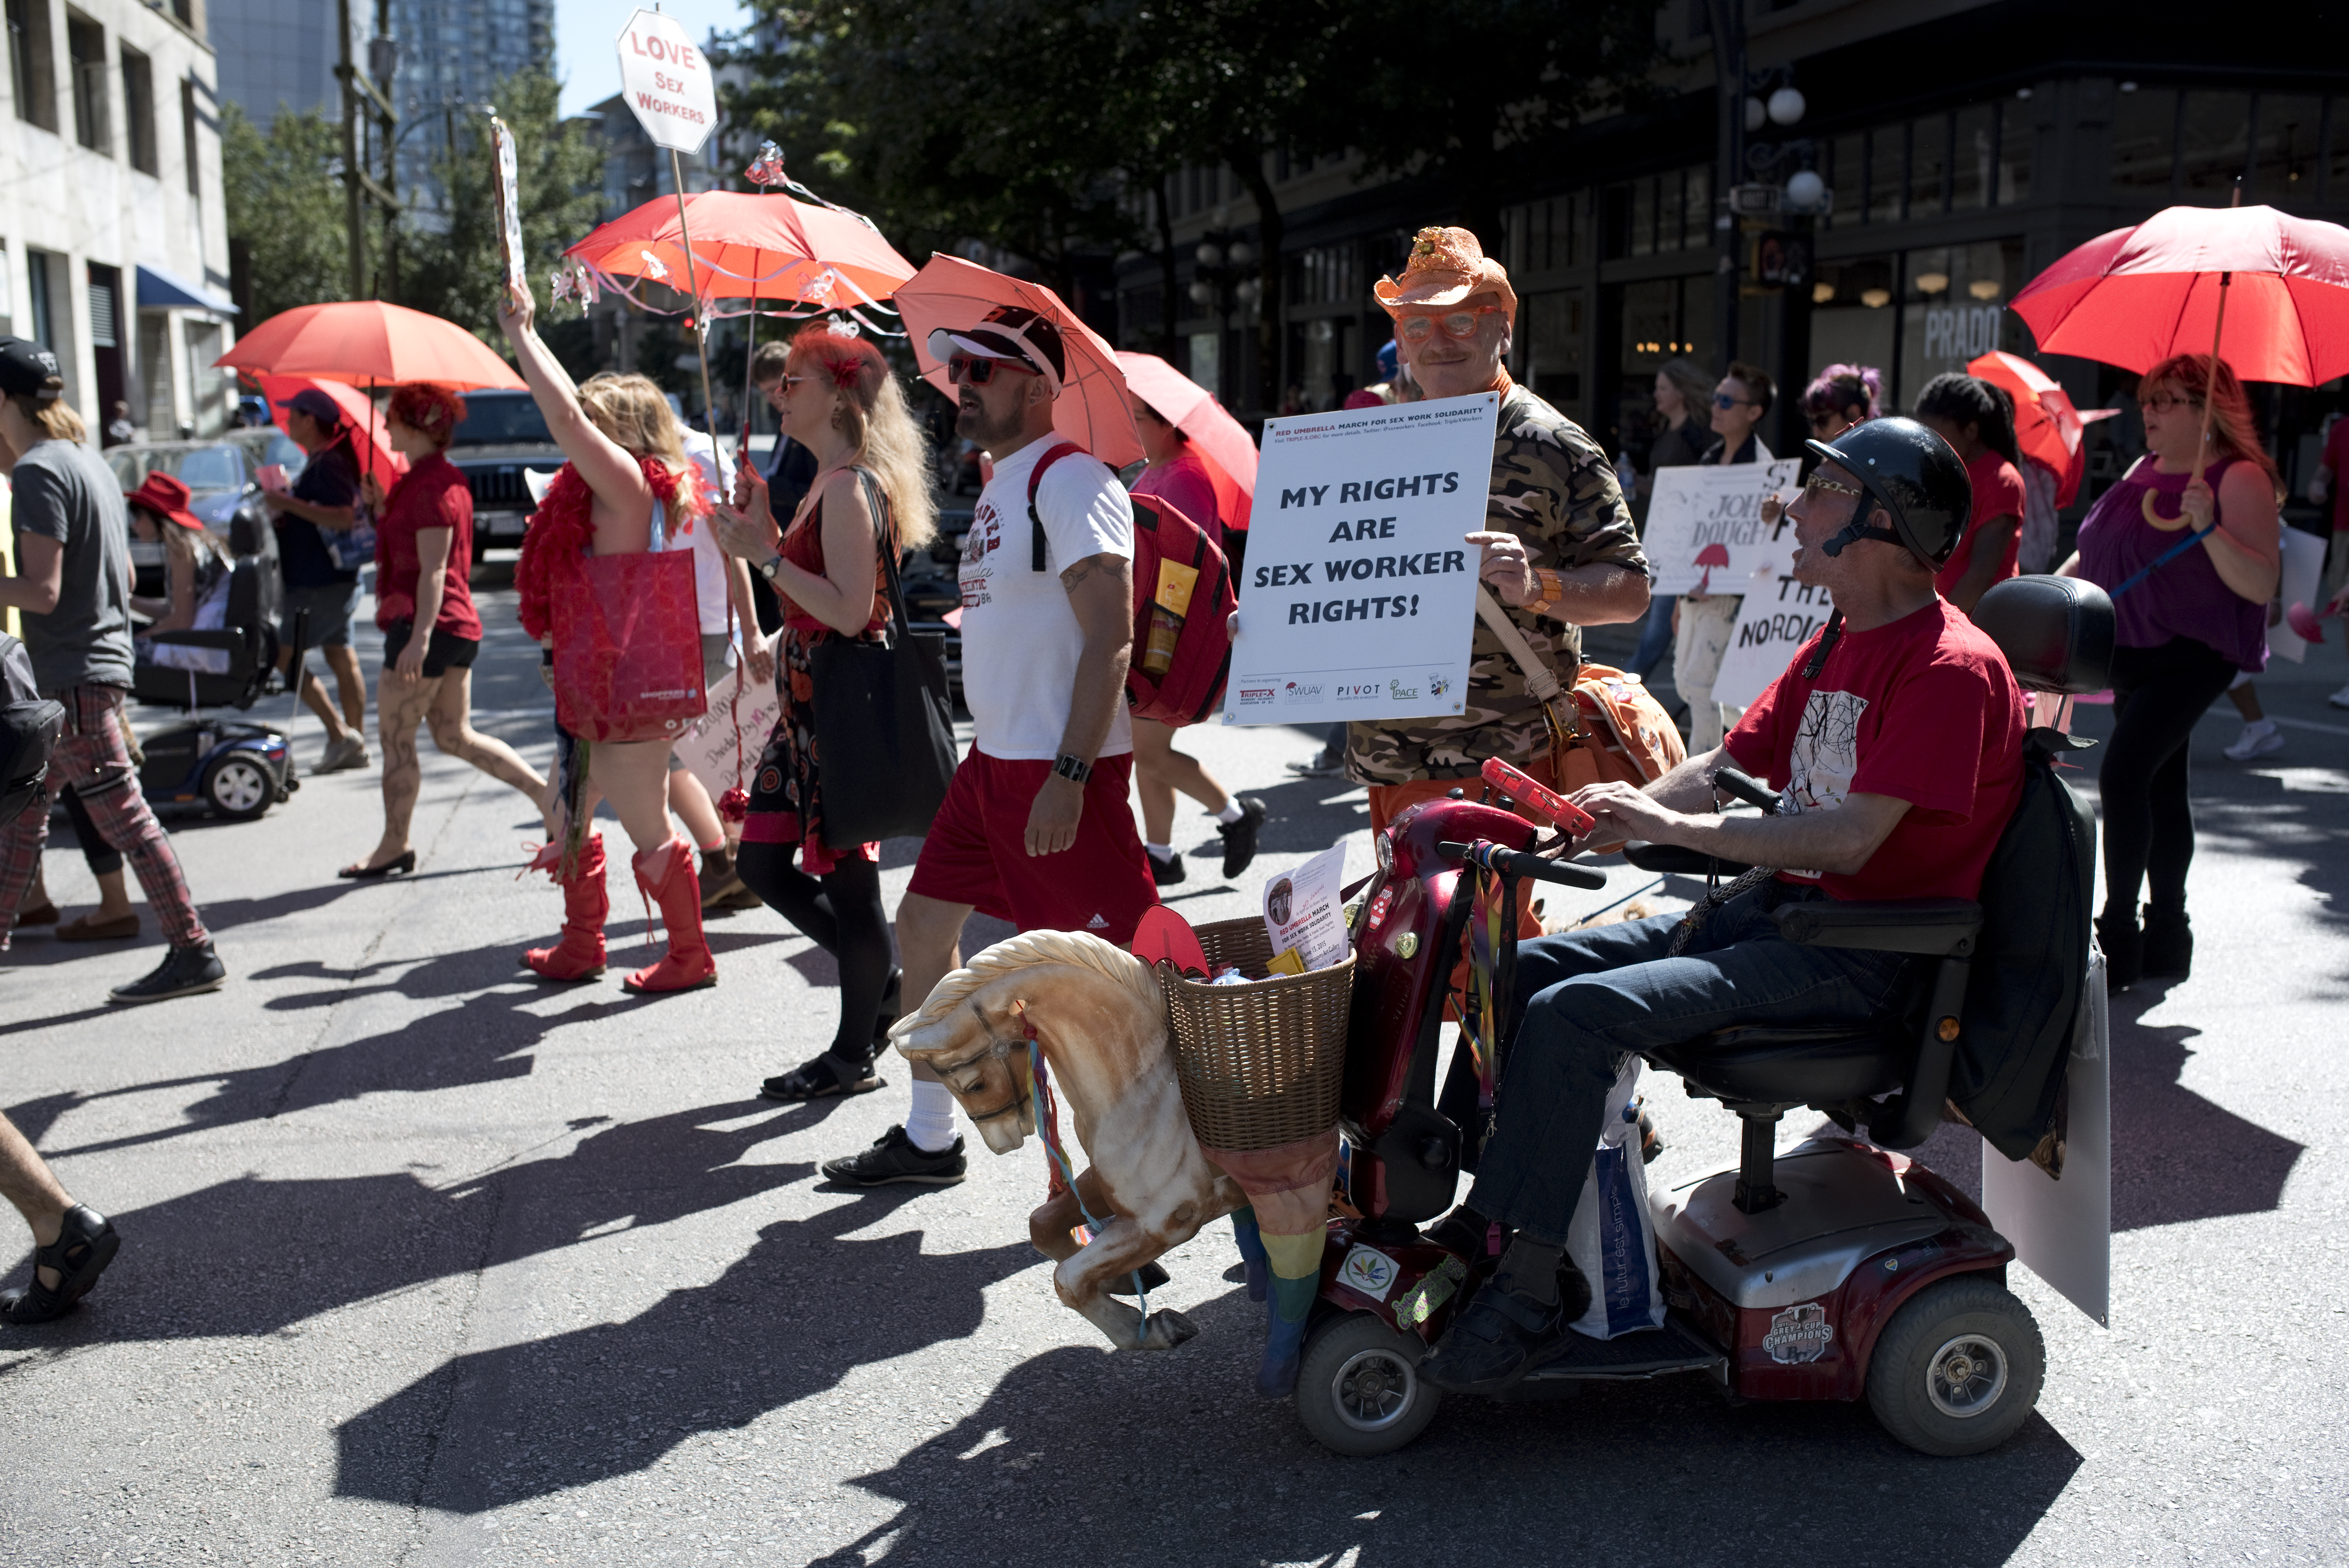 Red Umbrella March, Vancouver June 13, 2015. Photo: Philip Lo